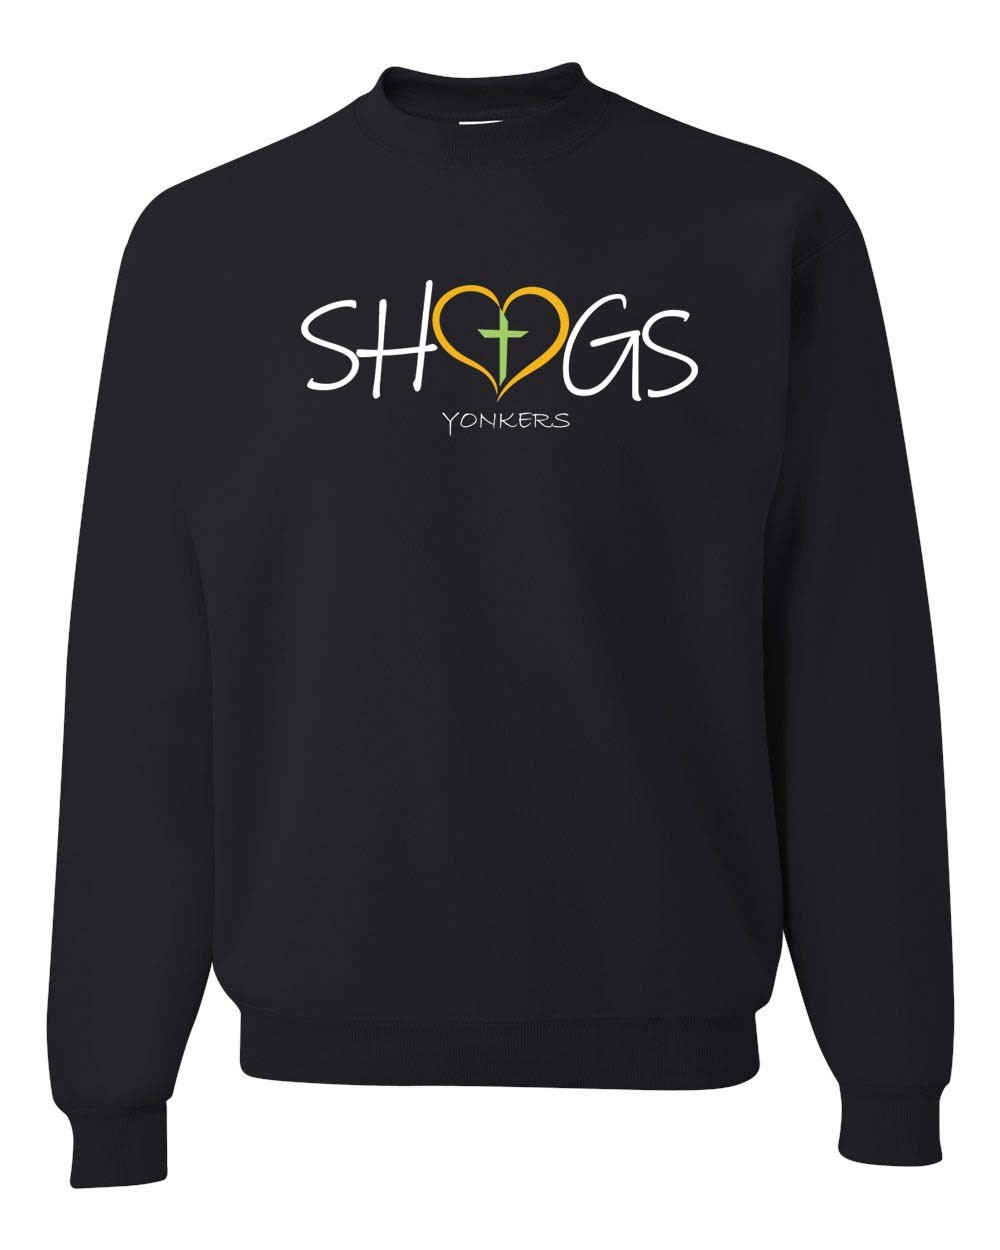 SHGS Spirit Sweatshirt w/ Heart Logo - Please Allow 2-3 Weeks for Delivery